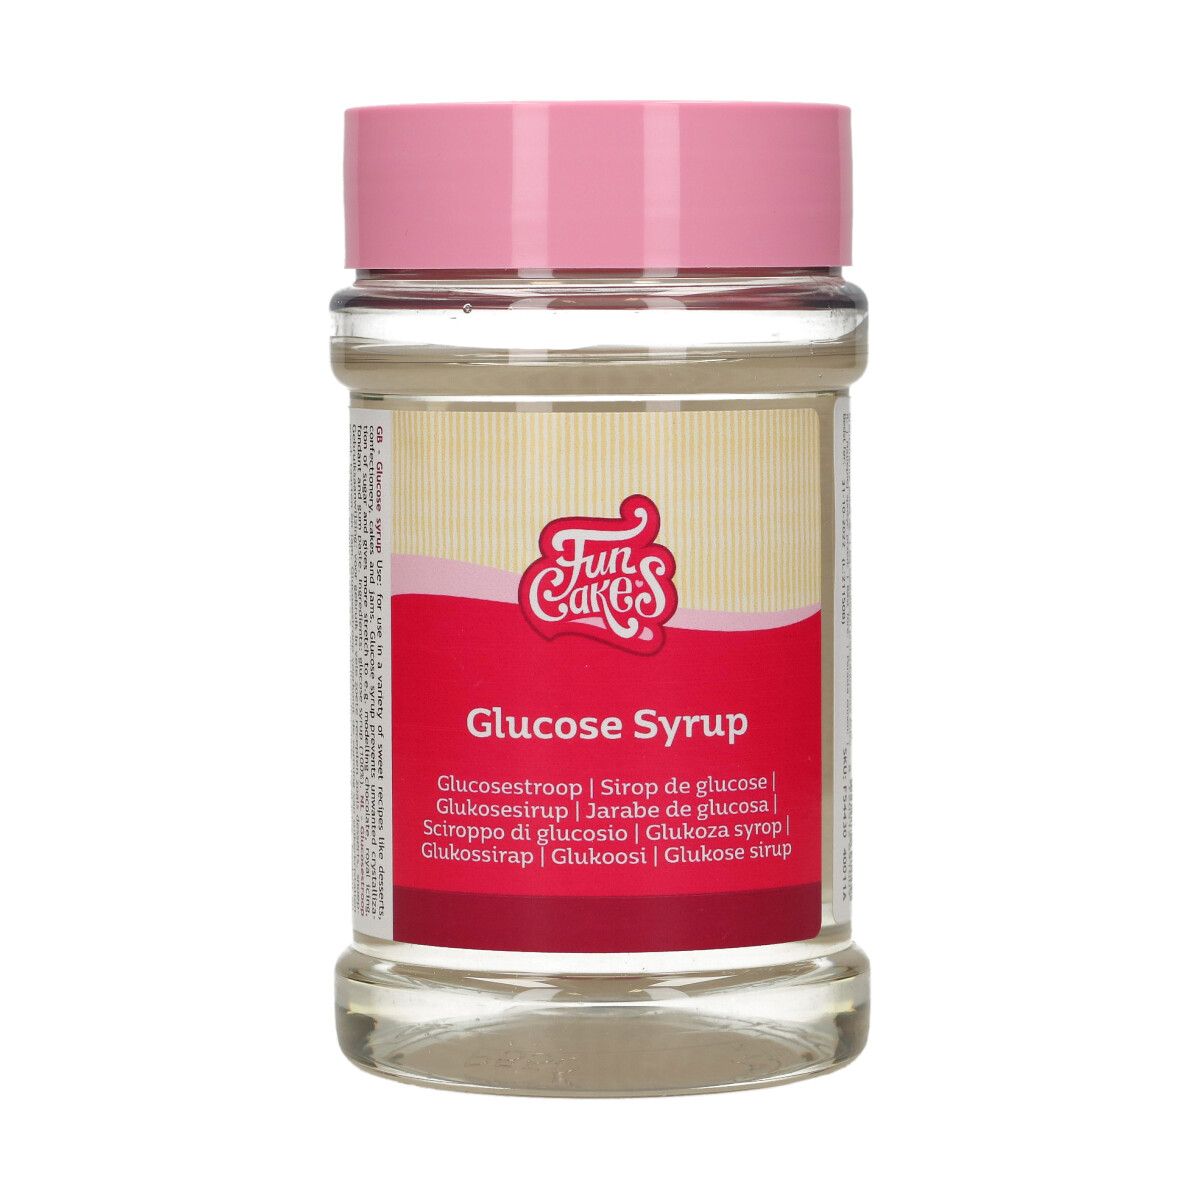 1 KG de sirop de glucose liquide de confiserie de qualité alimentaire pour  la pâtisserie et la confiserie (500 g x 2 paquets)